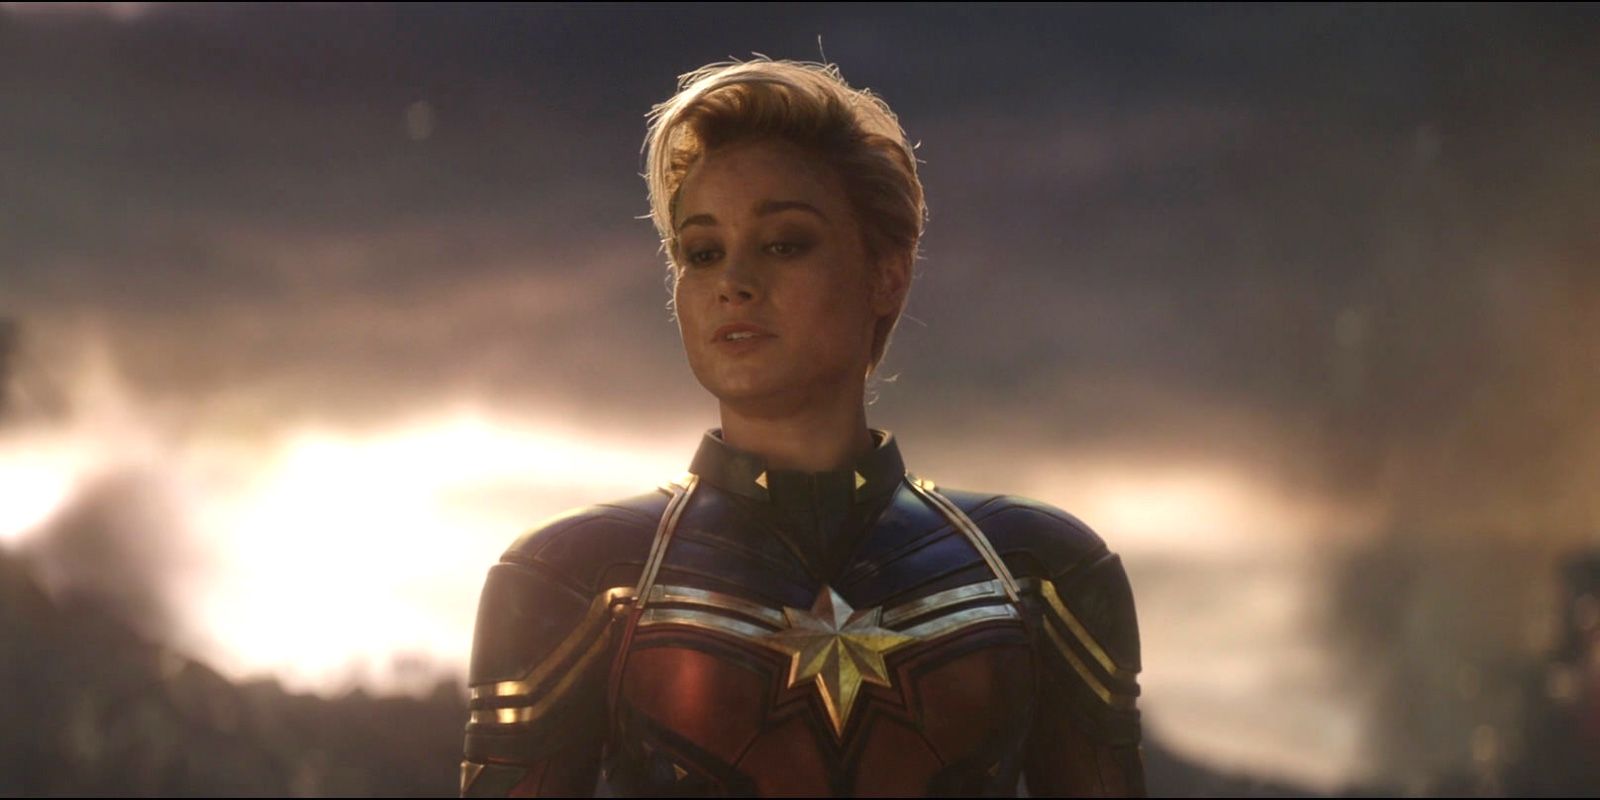 Brie Larson as Captain Marvel in Avengers Endgame